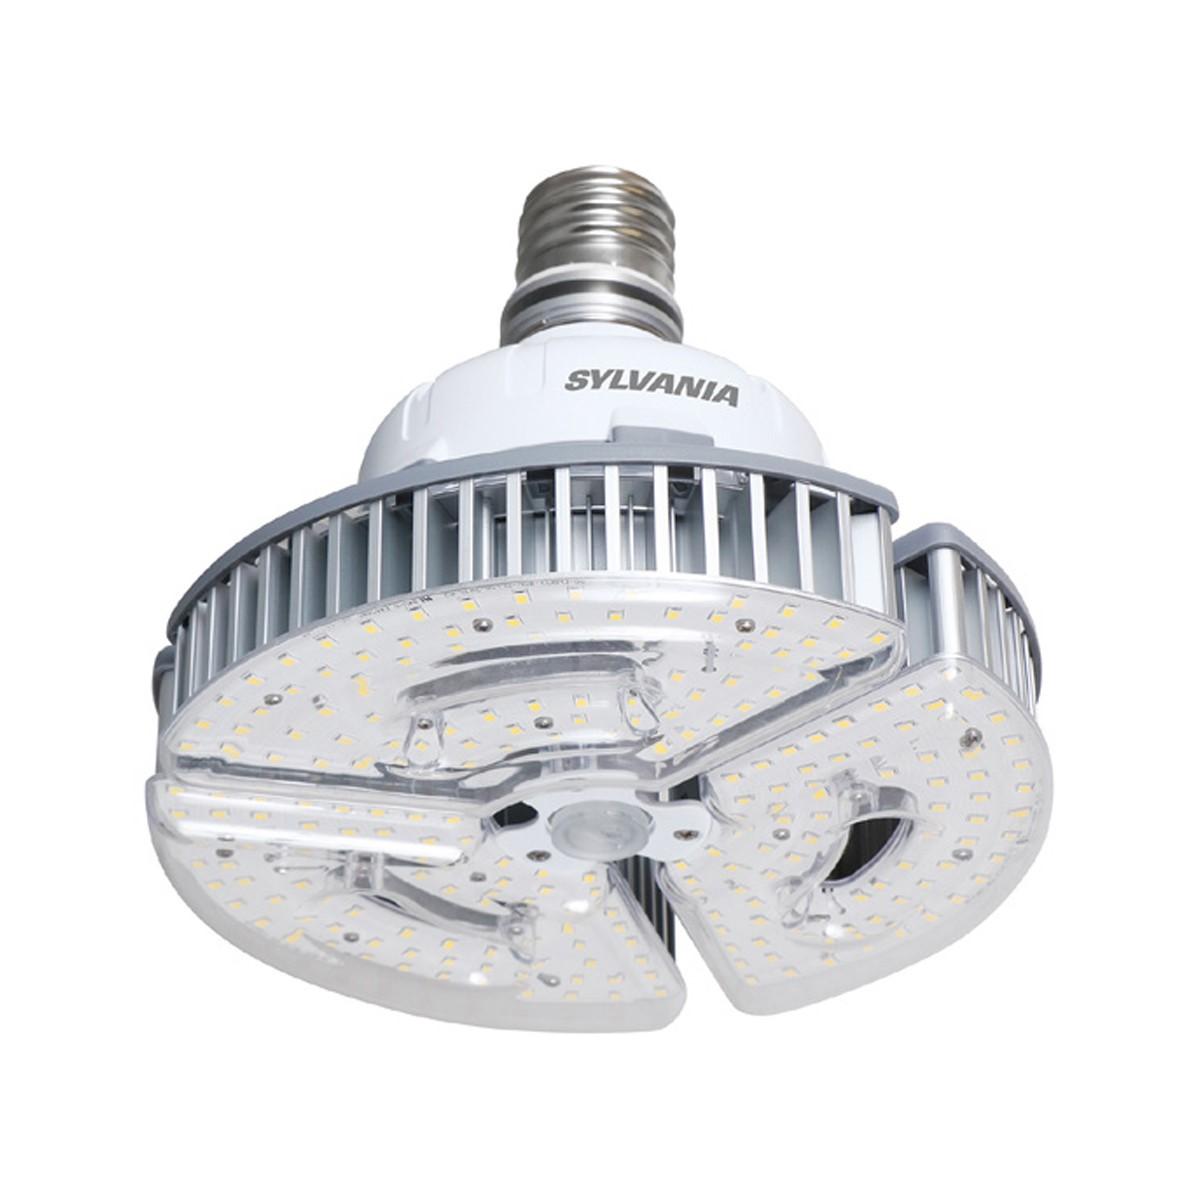 LED High Bay Retrofit Lamp, 100W, 14000 Lumens, 5000K, EX39 Mogul Extended Mogul Base, 120-277V